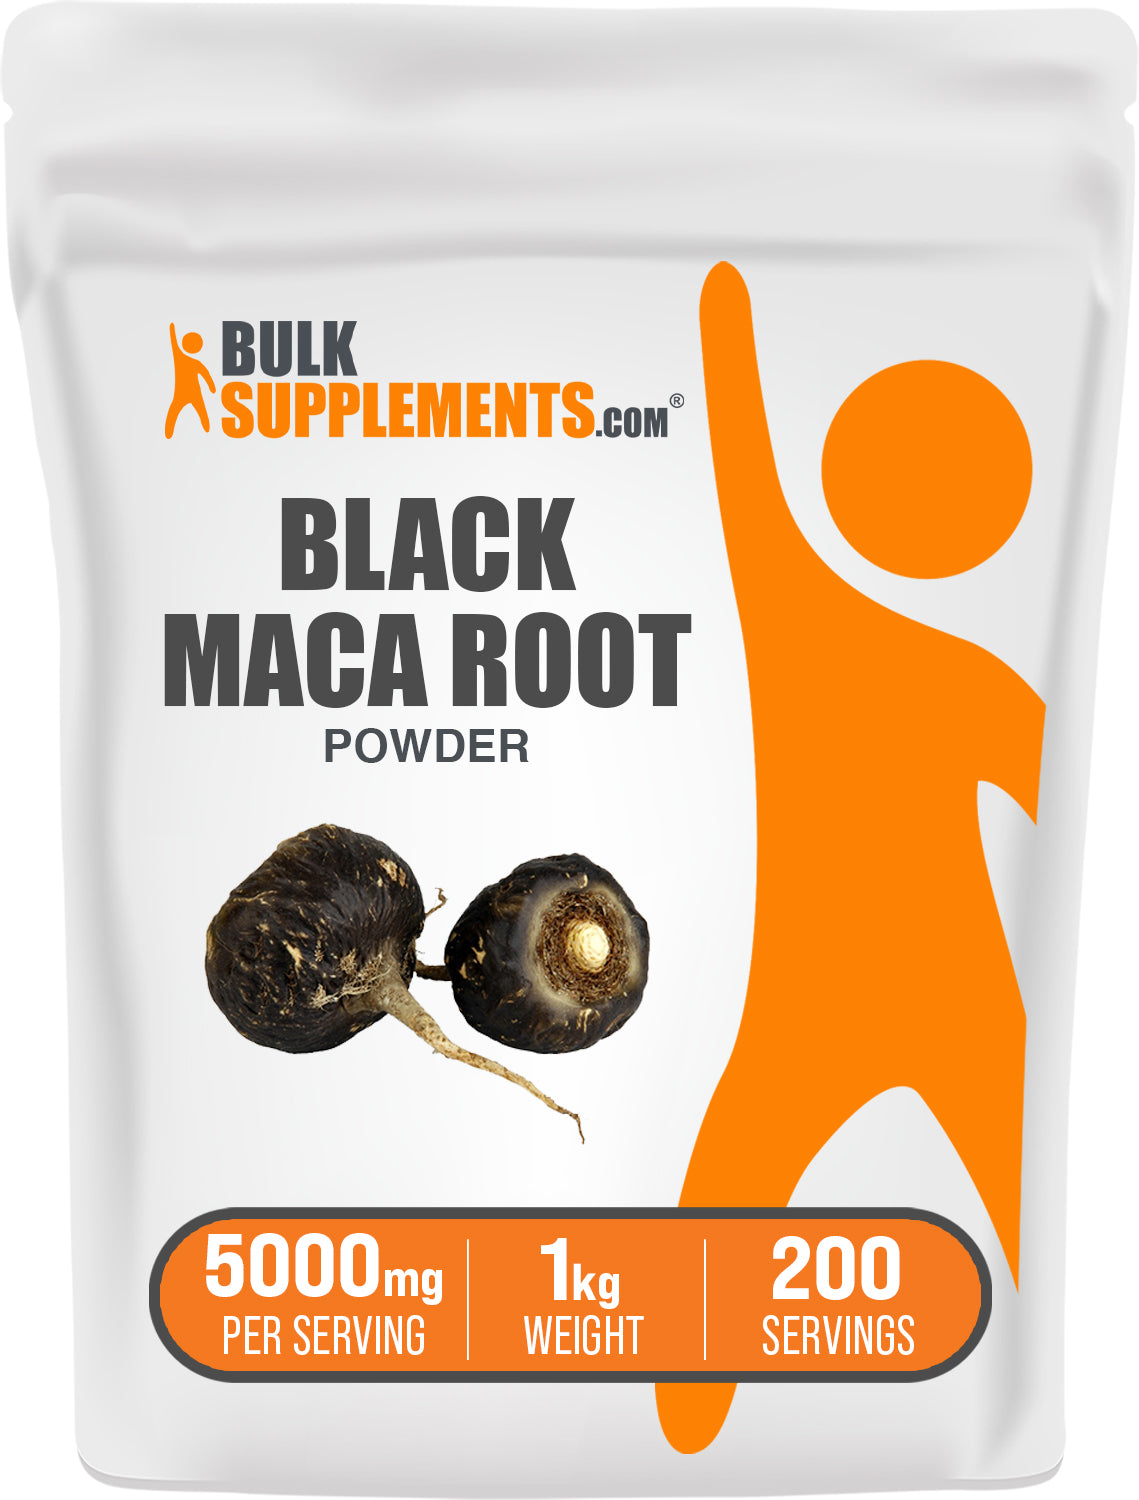 BulkSupplements.com Black Maca Powder 1kg bag